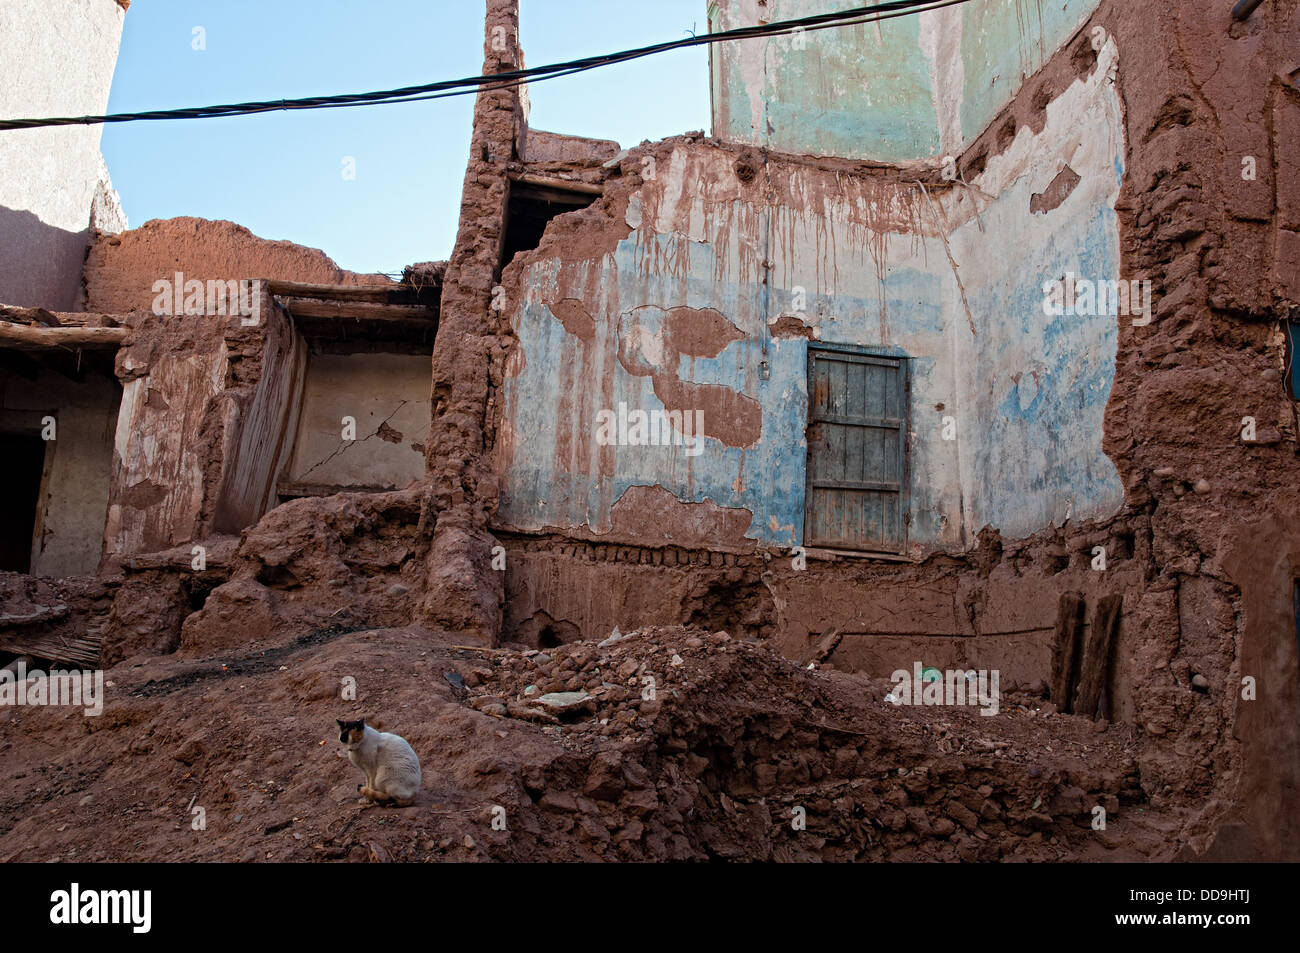 Les maisons en pisé en ruine dans le mellah (quartier juif), Ouarzazate, Maroc Banque D'Images